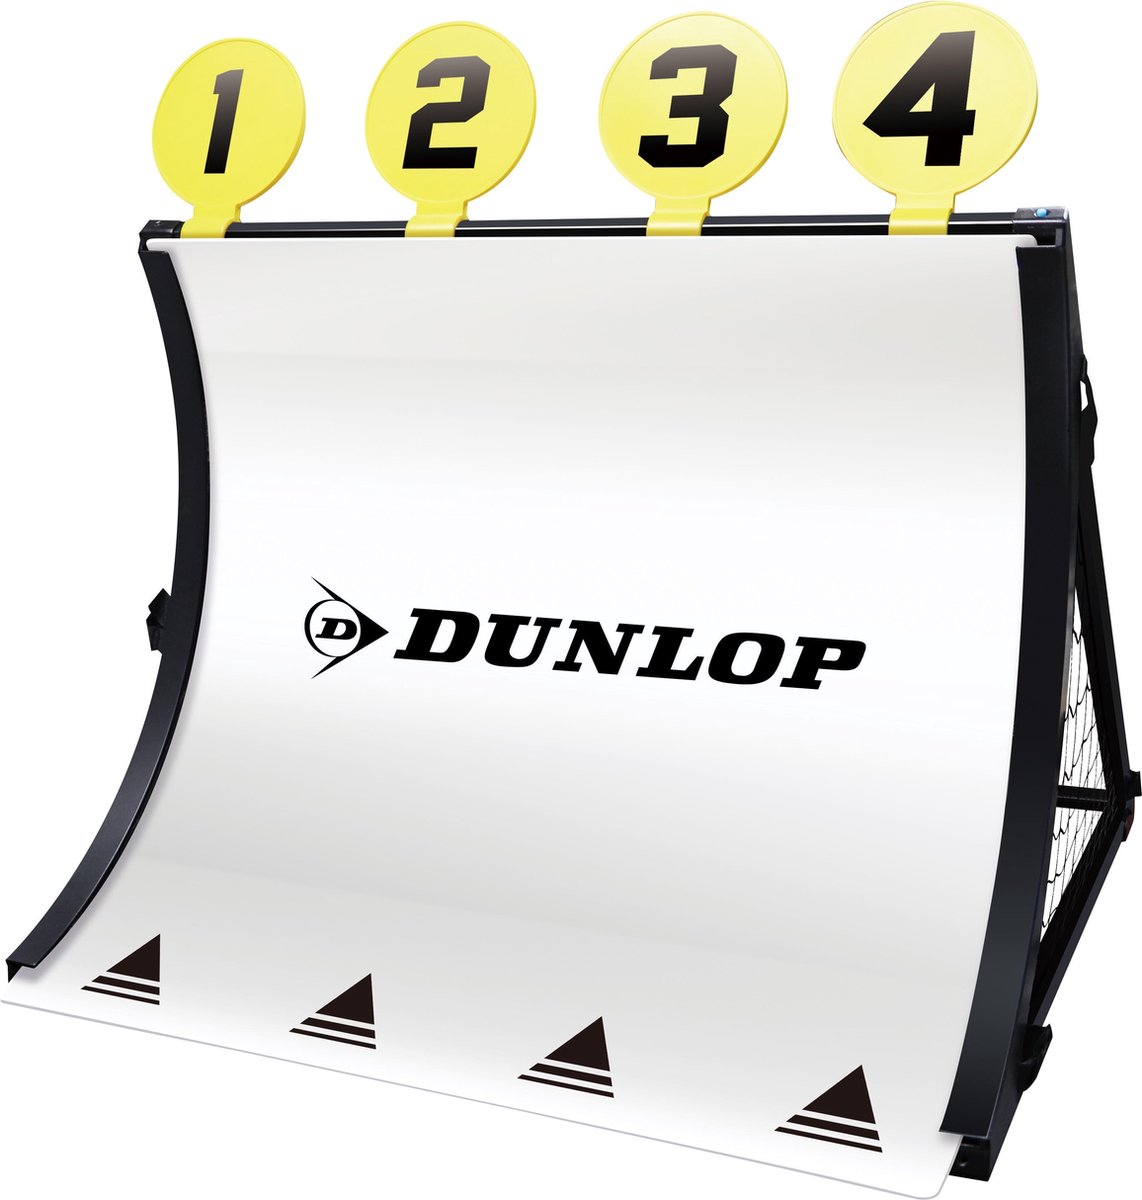 Dunlop Voetbaldoel - 4-in-1 - Met Voetbal, Pomp, Schietschijven en Haringen - 78 x 75 x 58 Cm - Dunlop